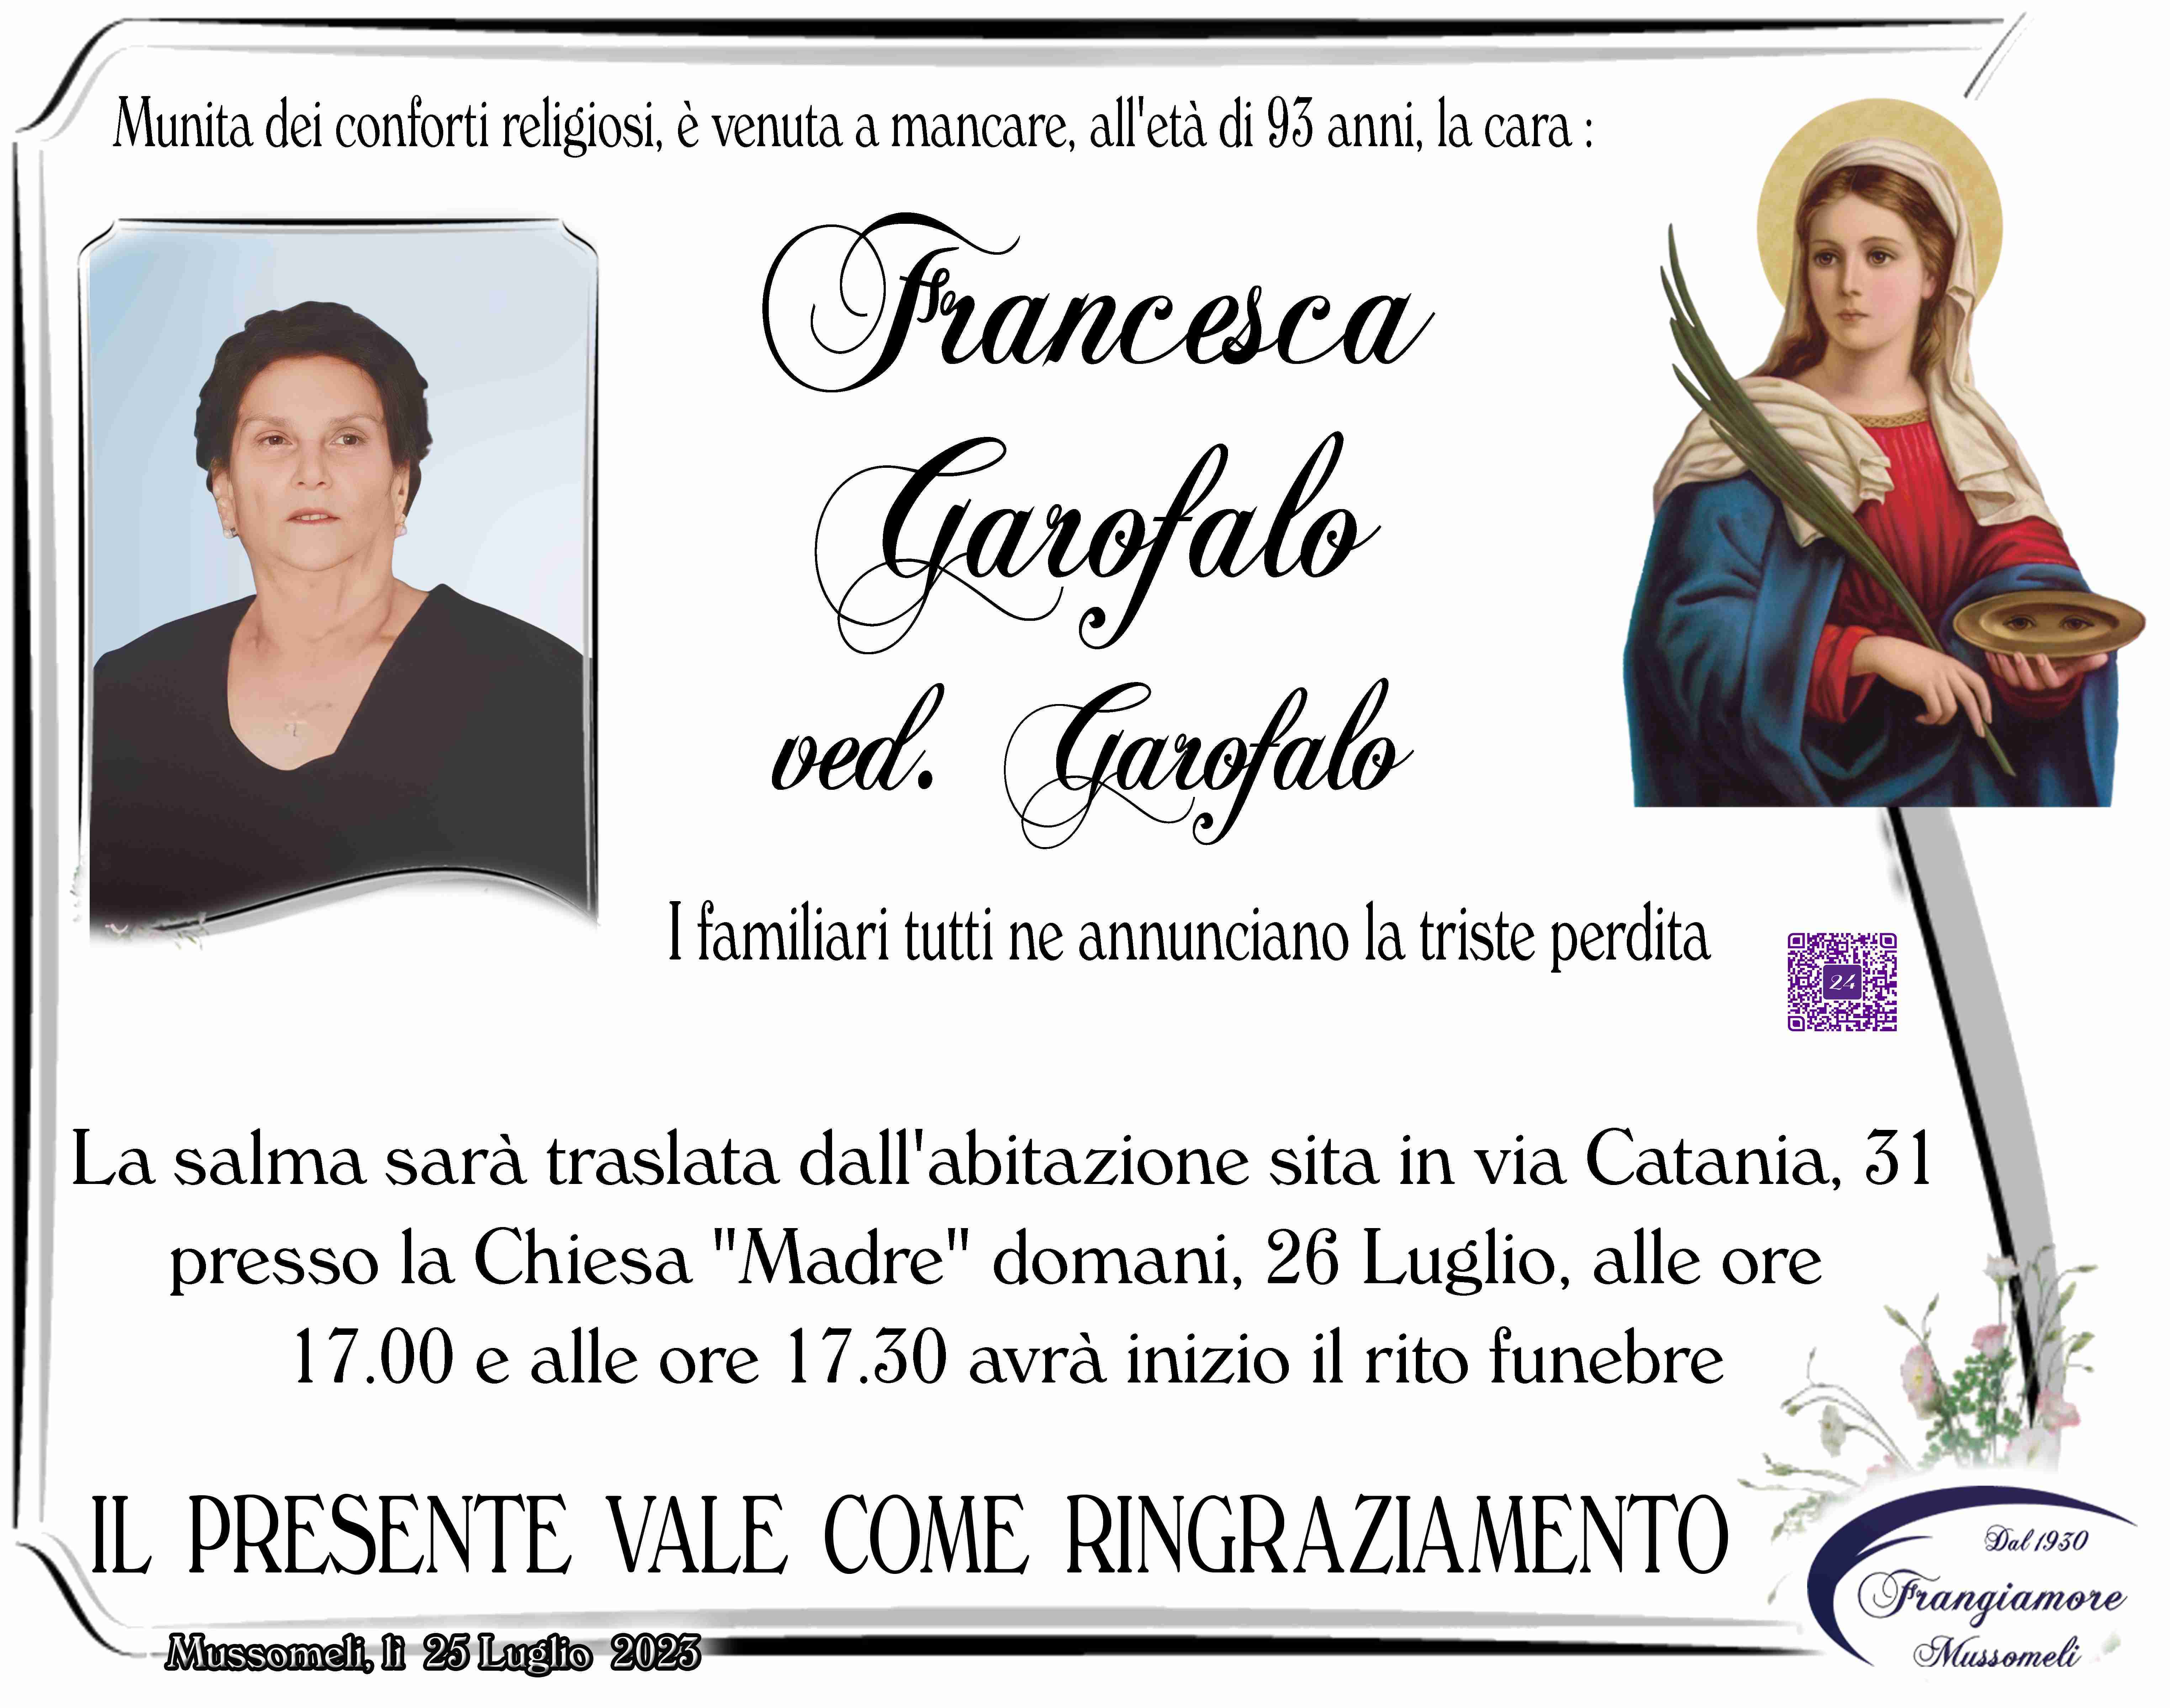 Francesca Garofalo